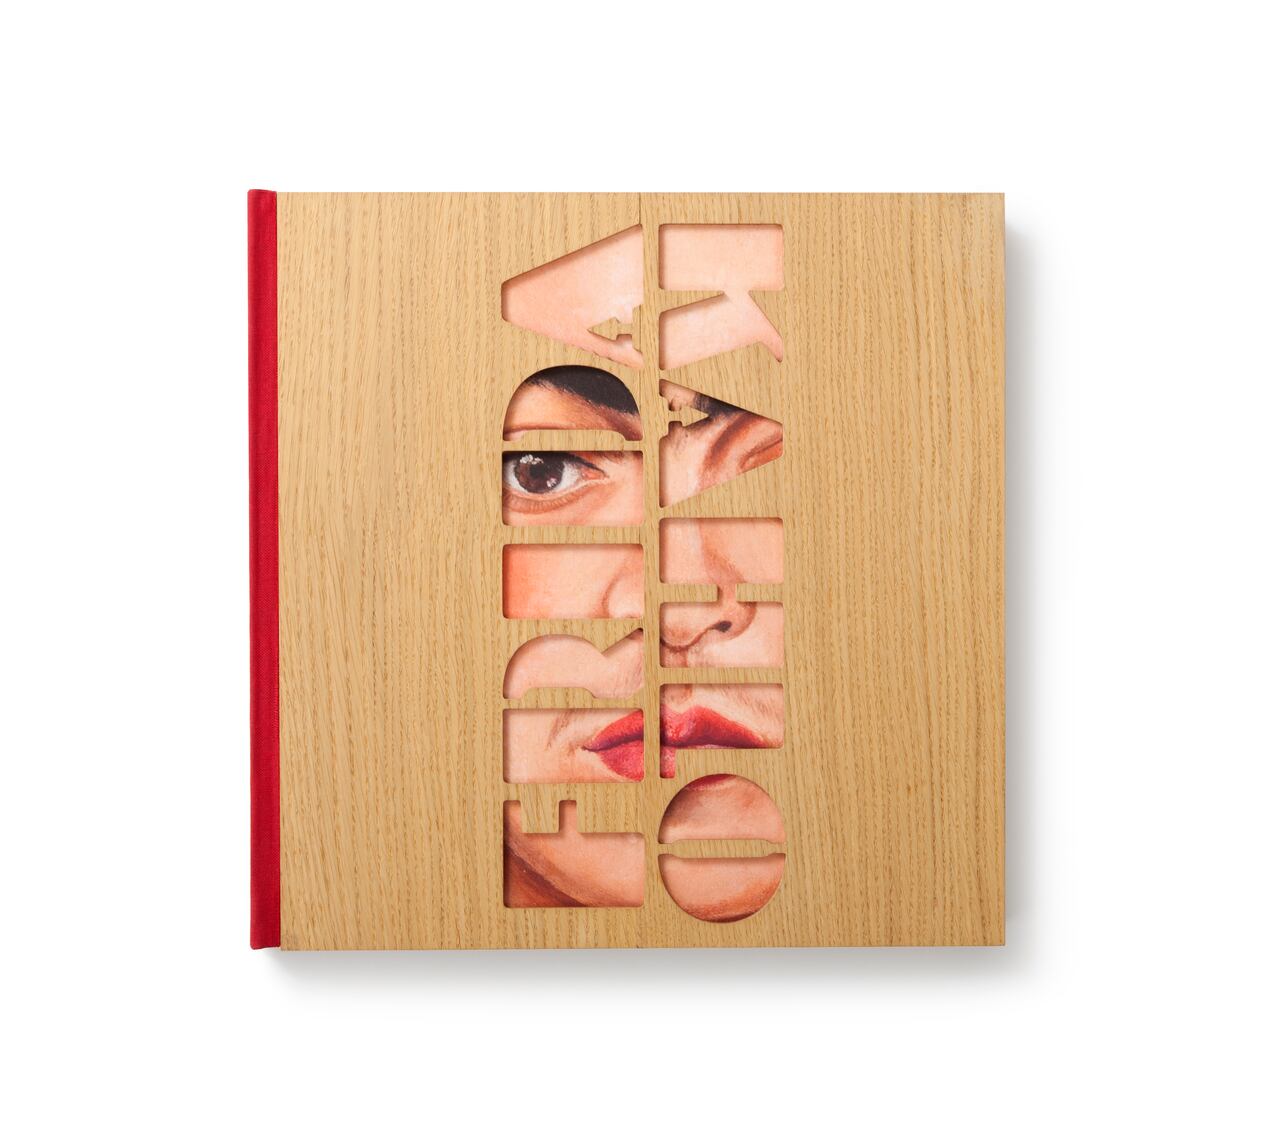 Imagen de "Los sueños de Frida", el nuevo libro del sello editorial ARTIKA. Foto cortesía de ARTIKA